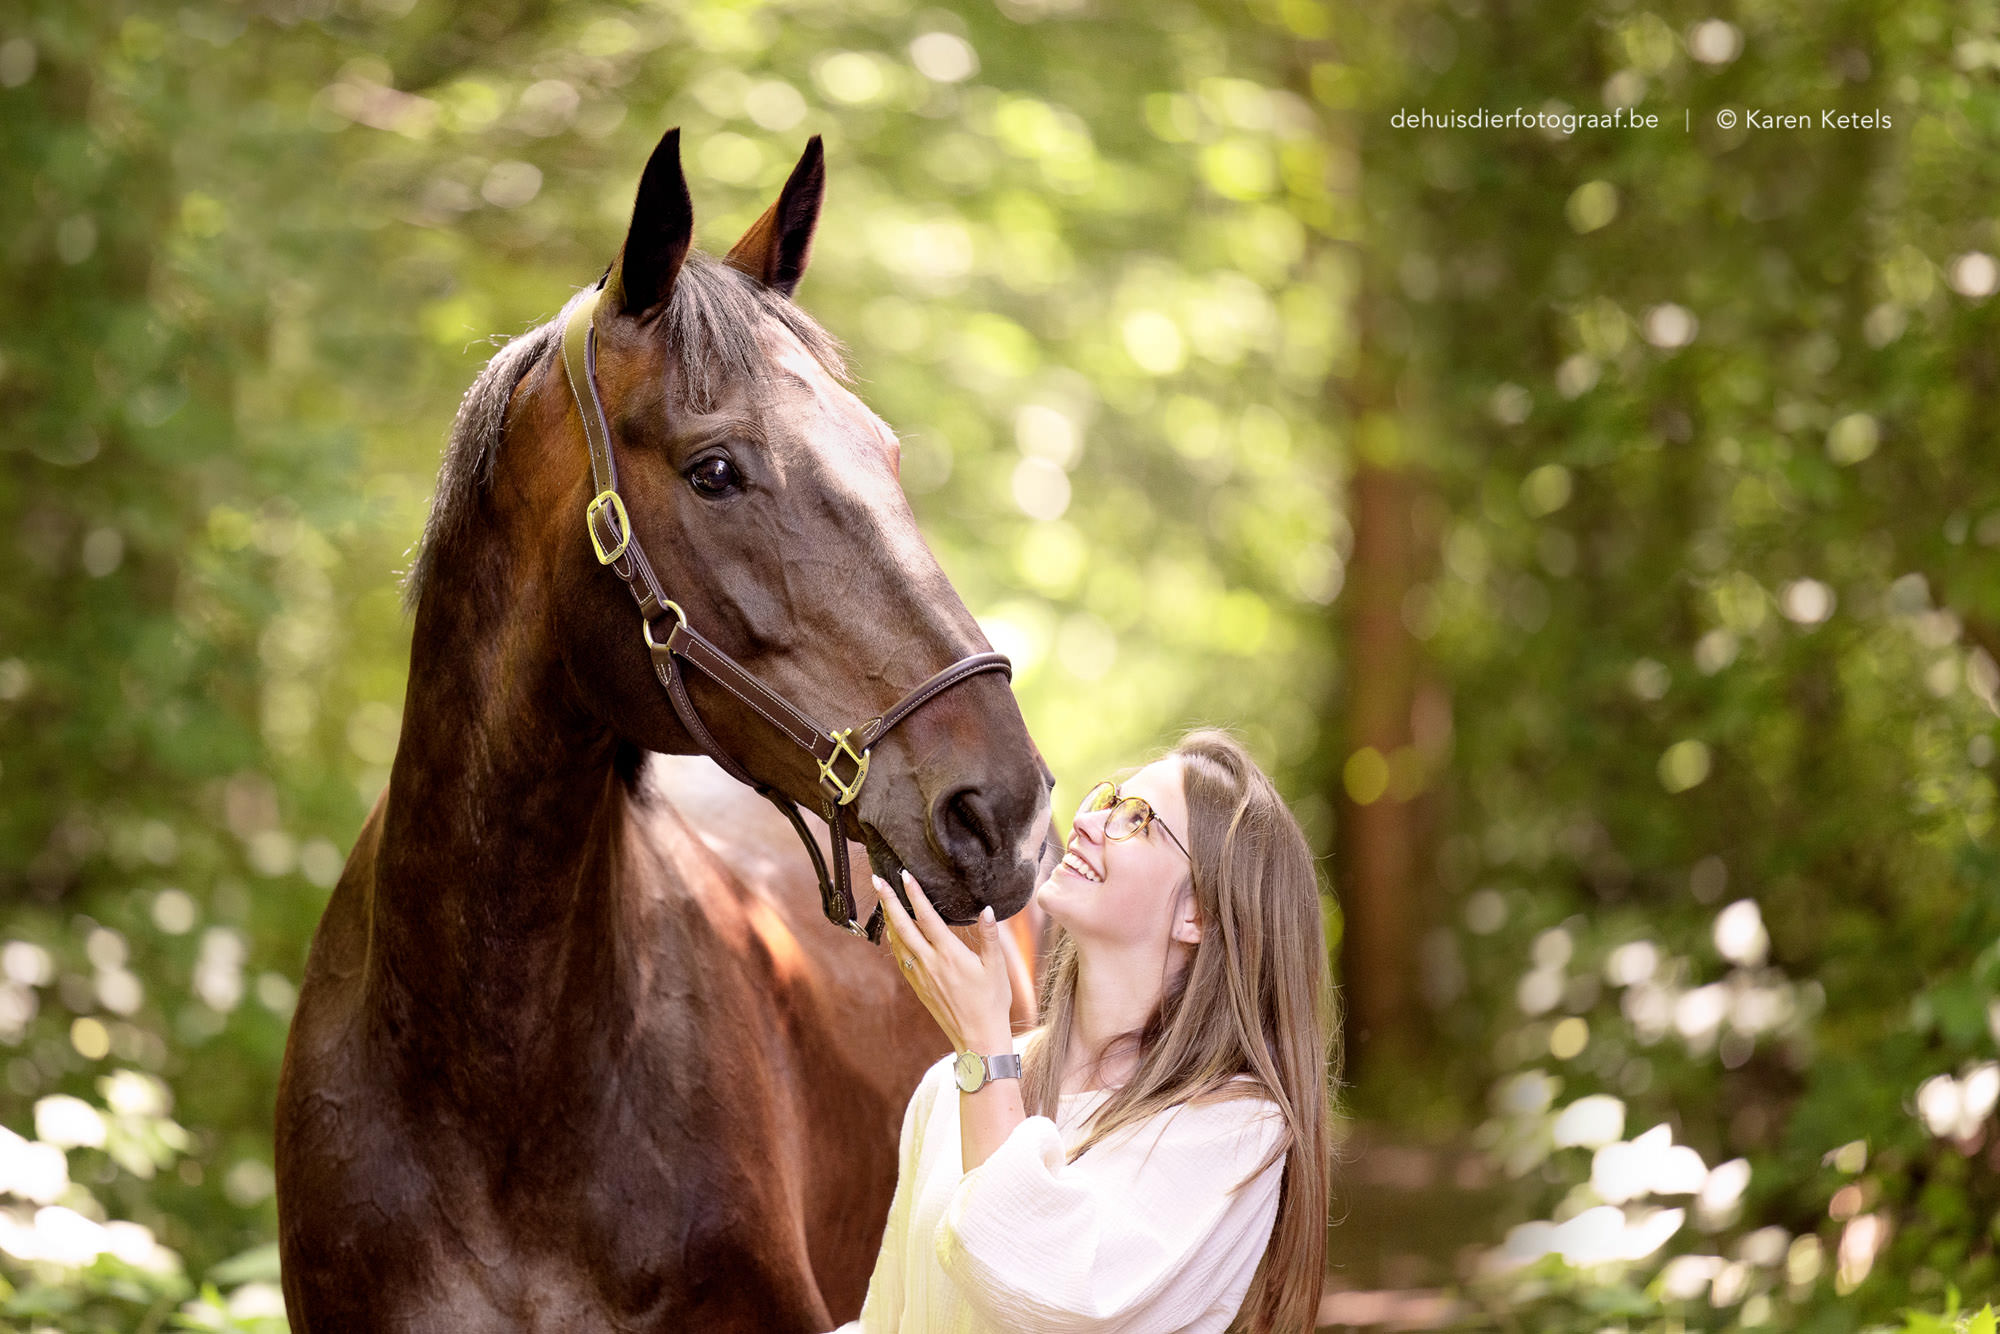 Portret van een meisje met haar paard door De Huisdierfotograaf